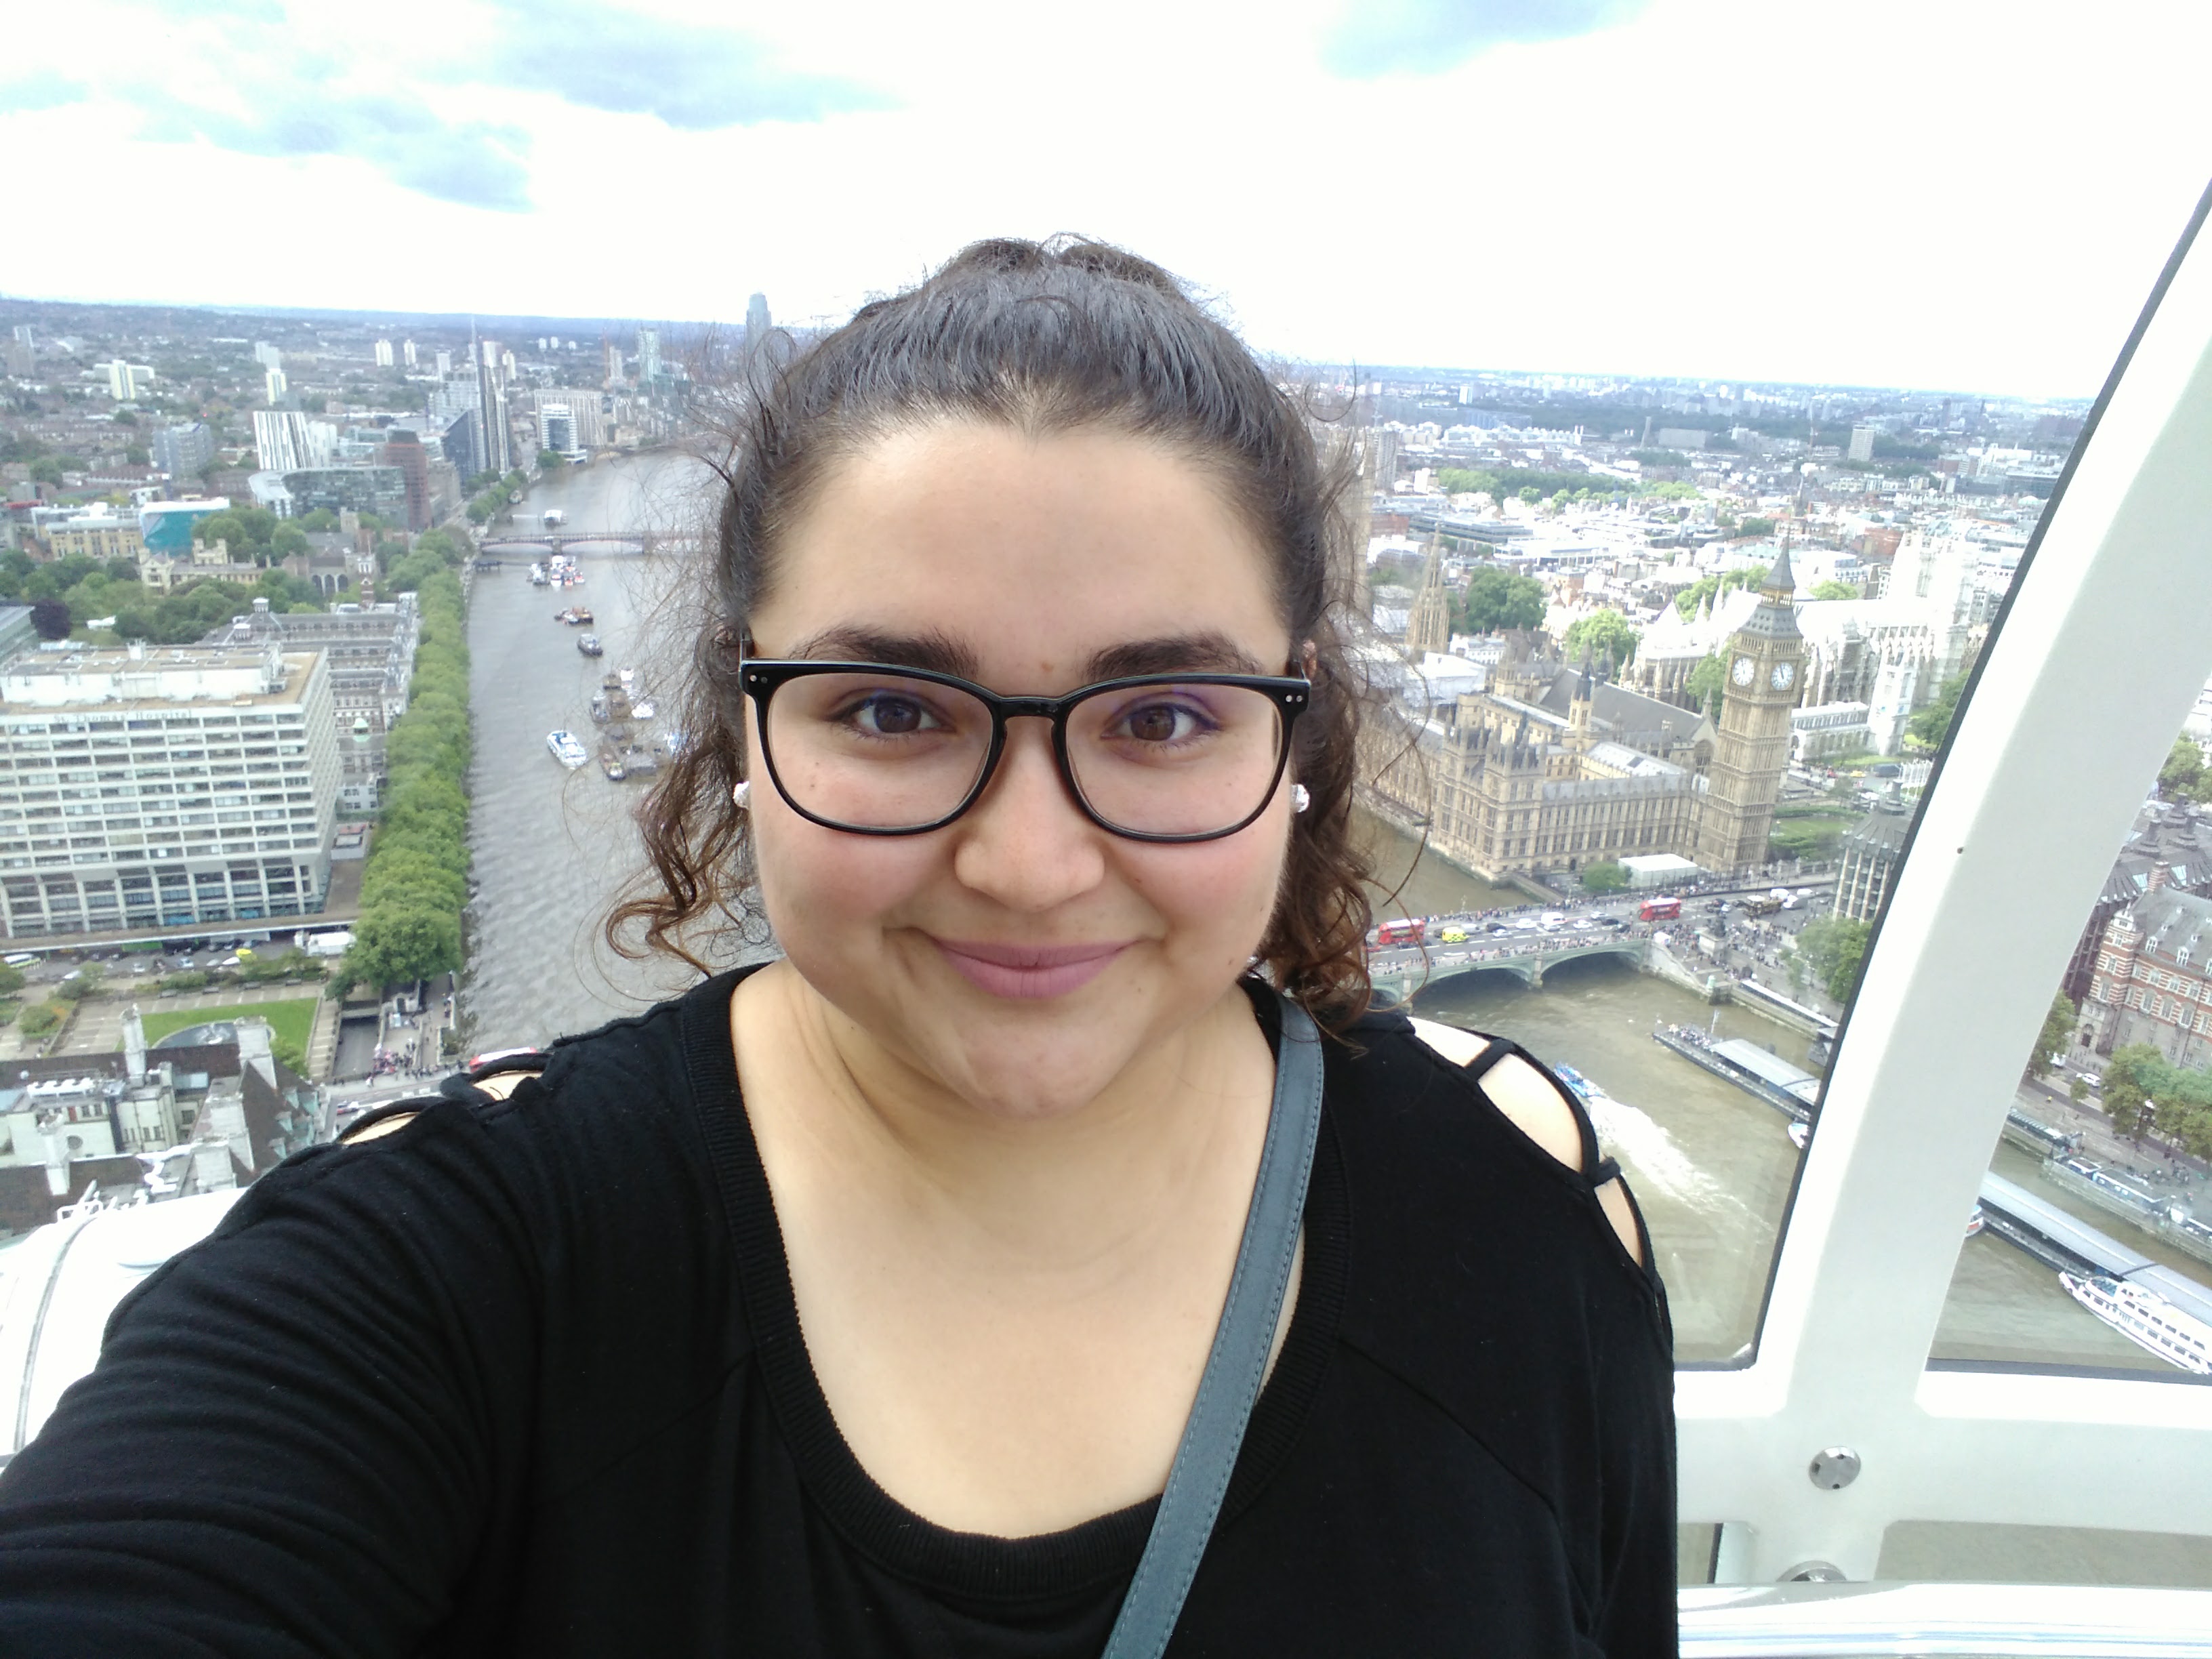 Alejandra on the London Eye